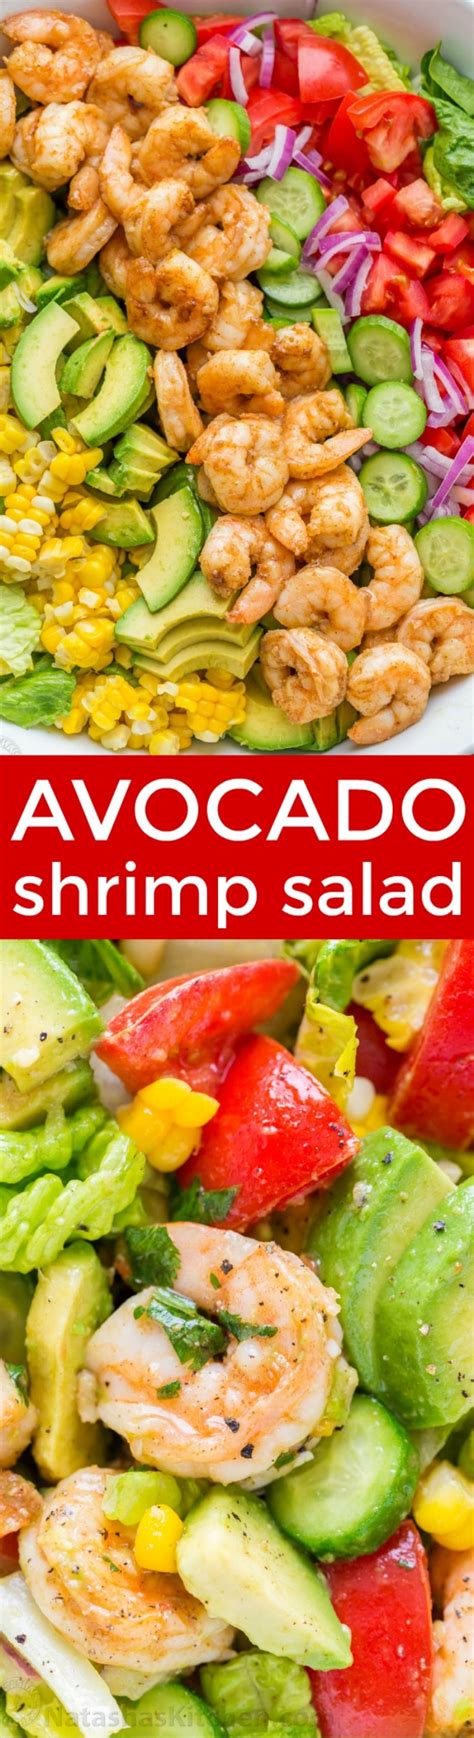 Shrimp Cobb Salad Video